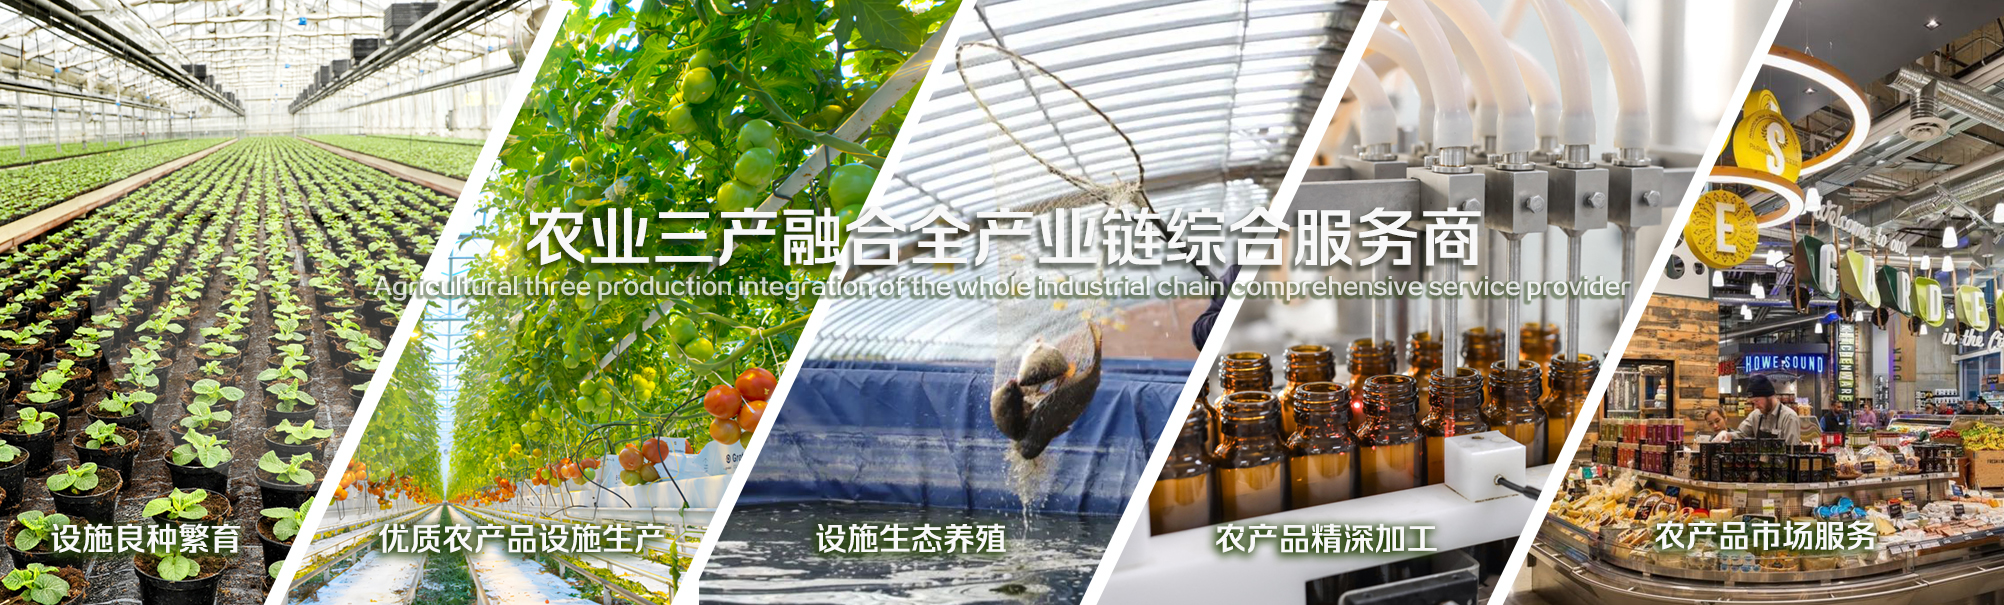 北京恒升农业集团-167net必赢的新网址-正版App Store